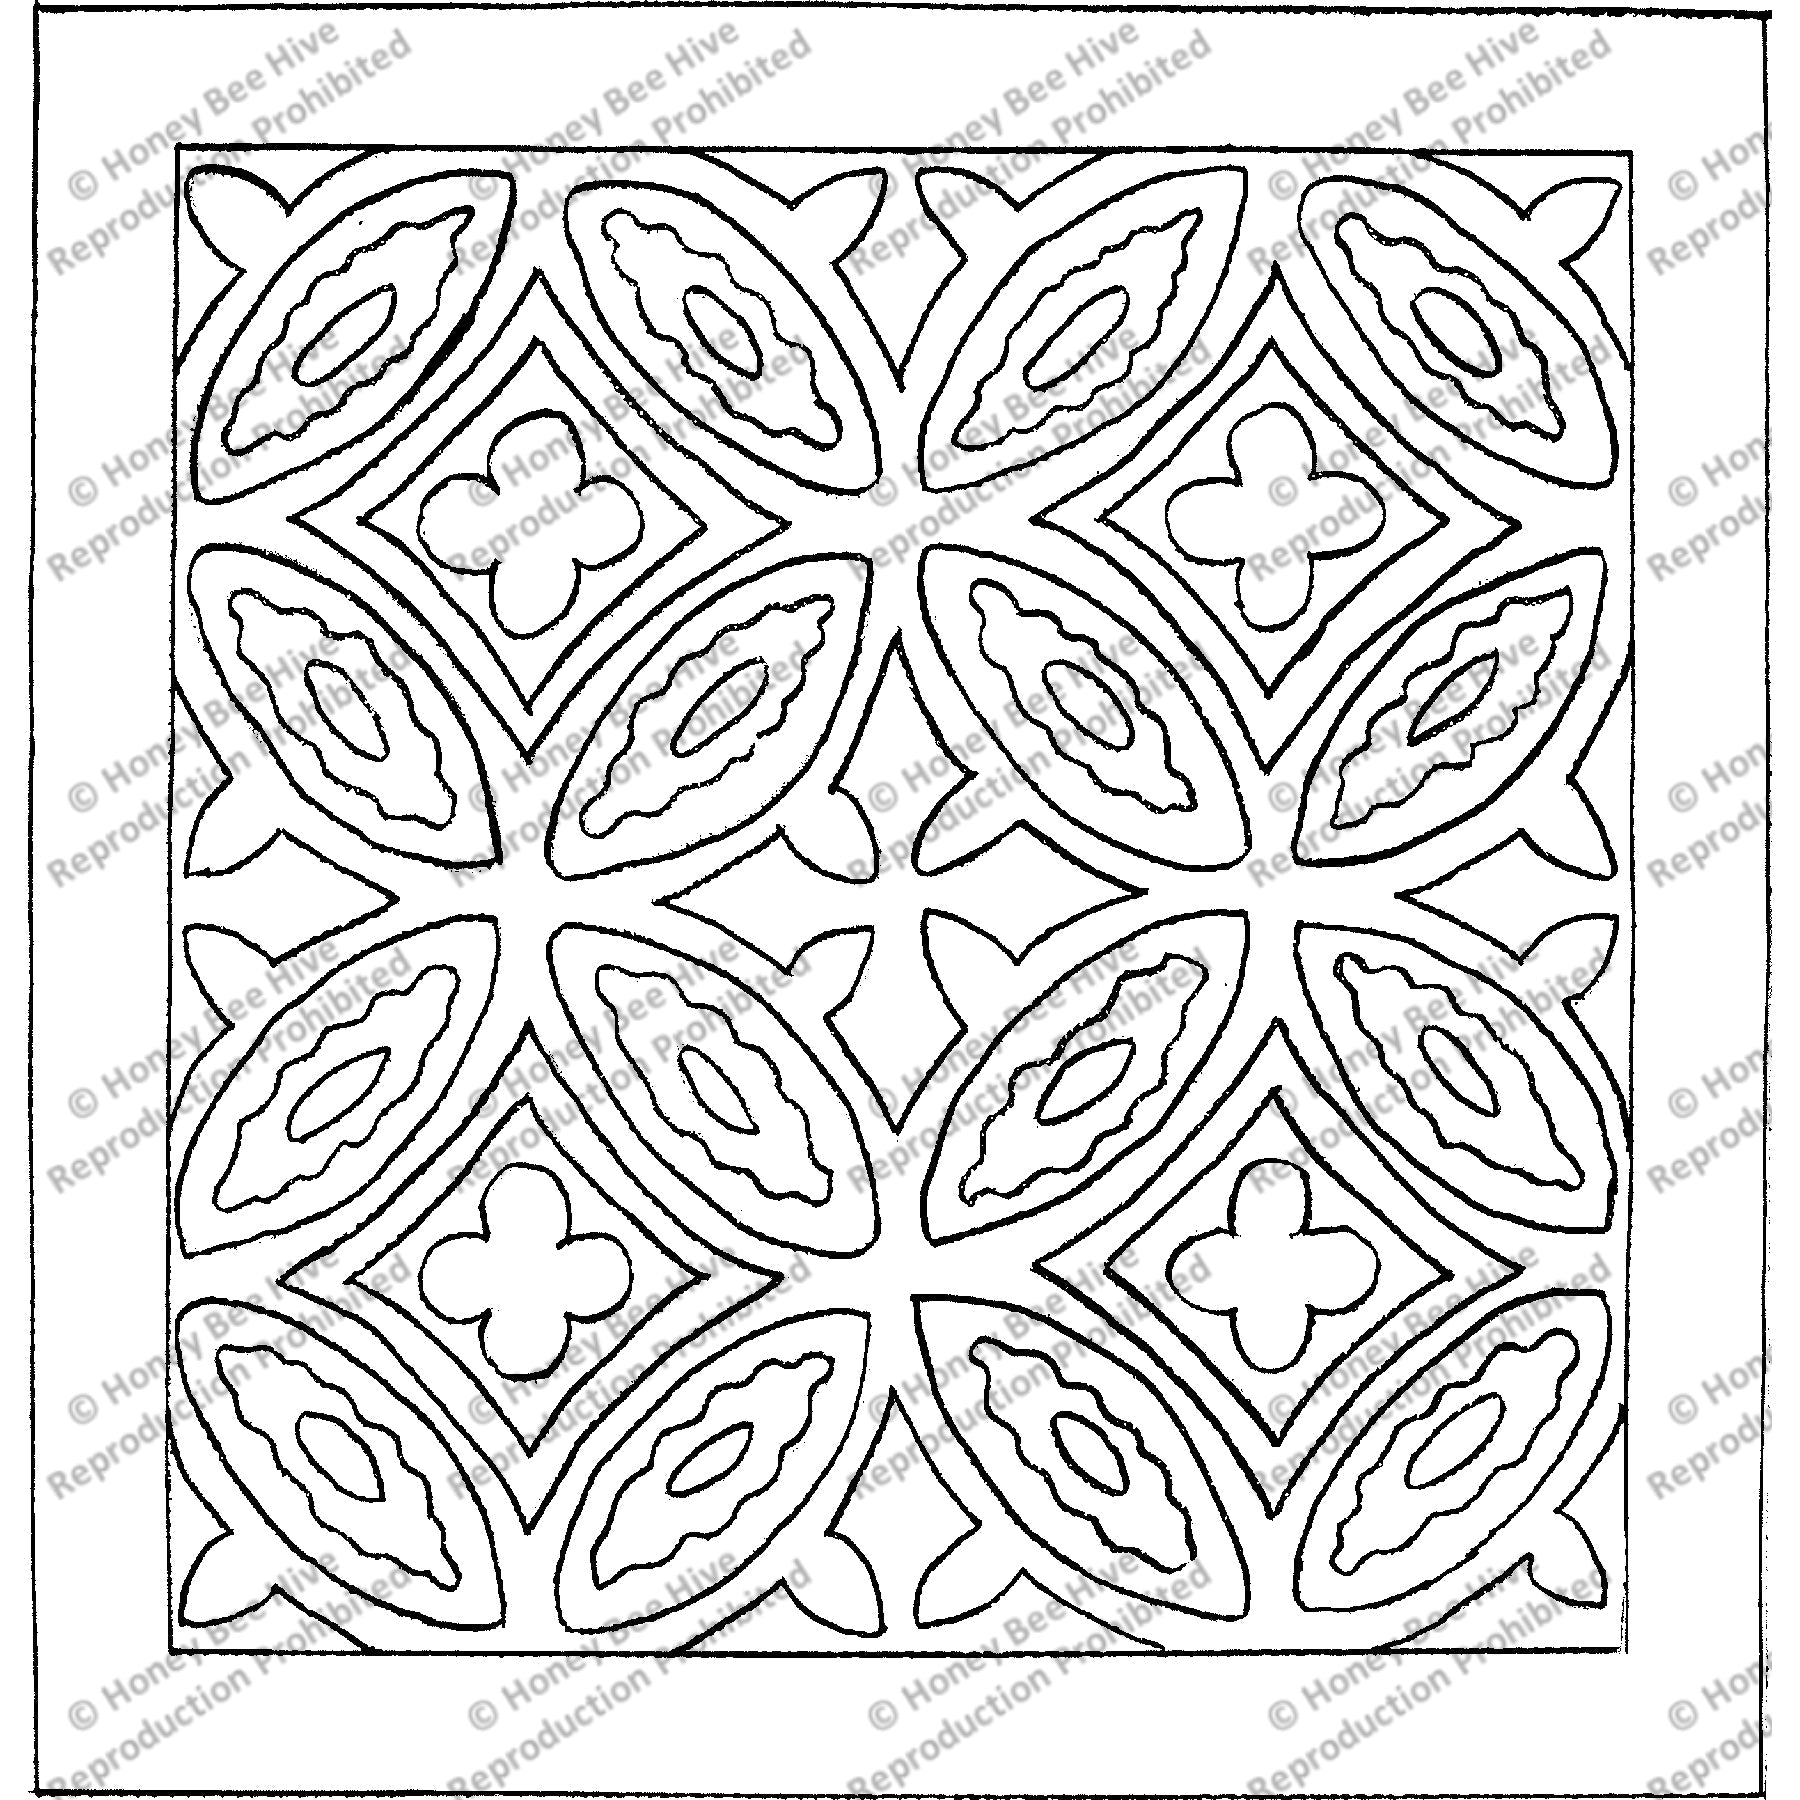 Echo, rug hooking pattern